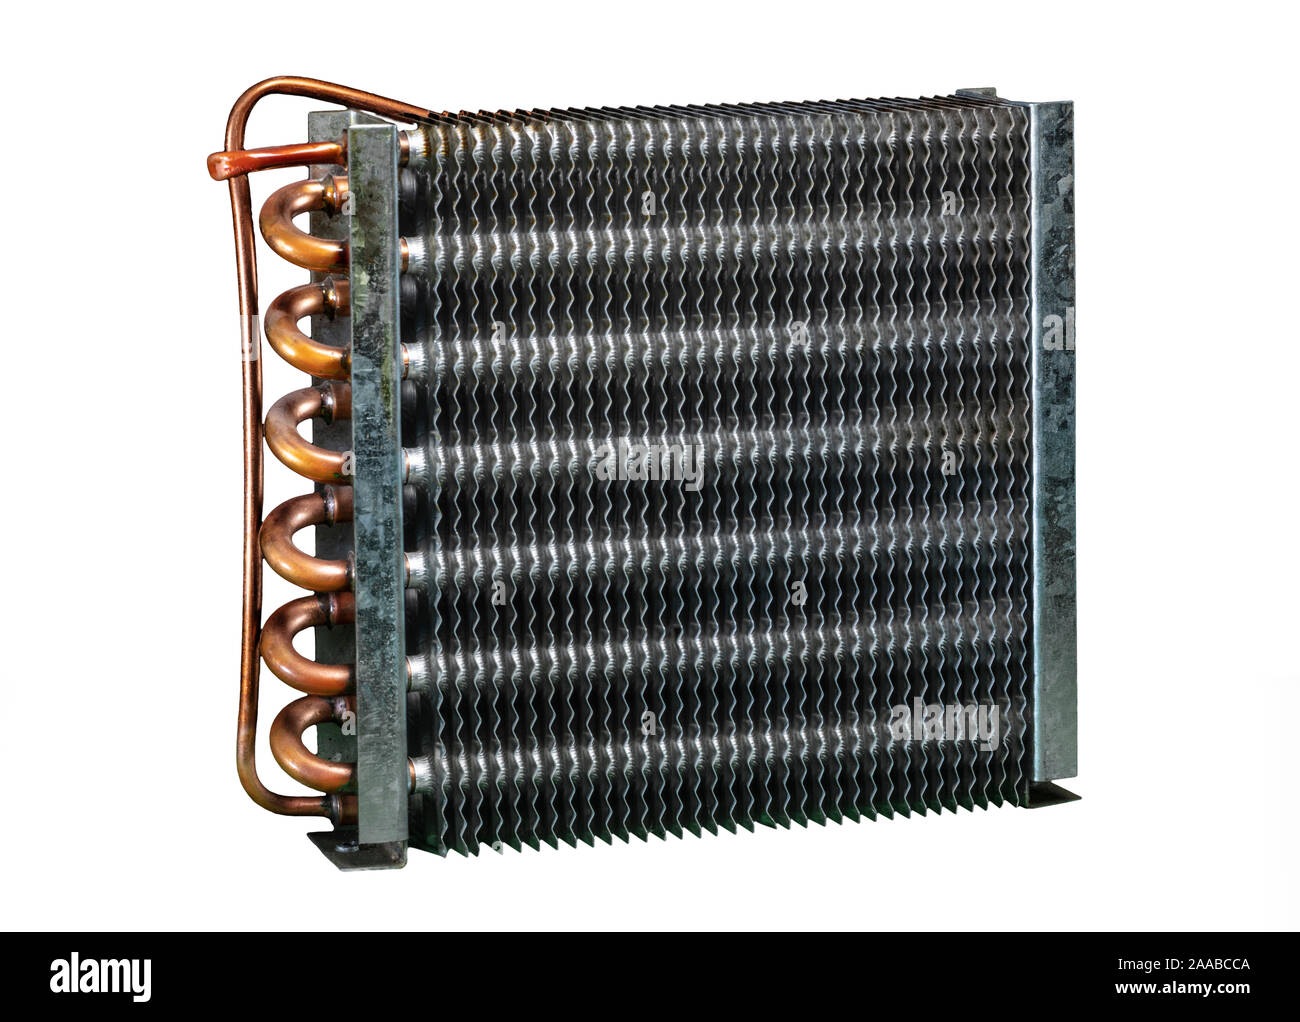 Compressore del frigorifero unità condensatore per la dissipazione del calore Foto Stock